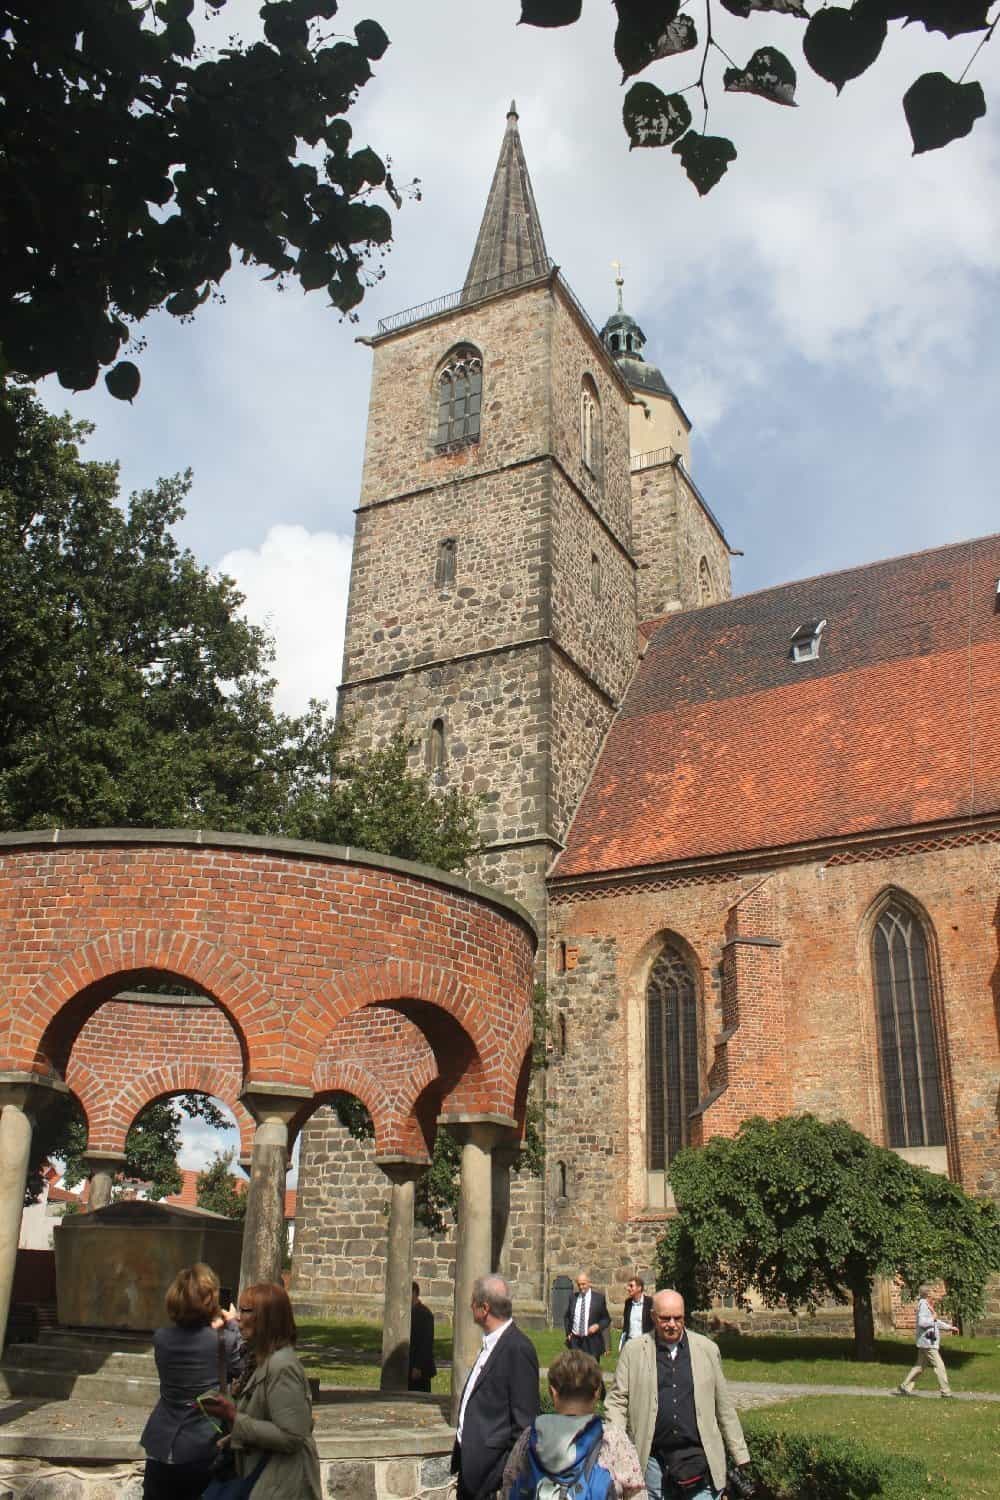 St. Nikolai ist das Wahrzeichen der Flämingstadt Jüterbog